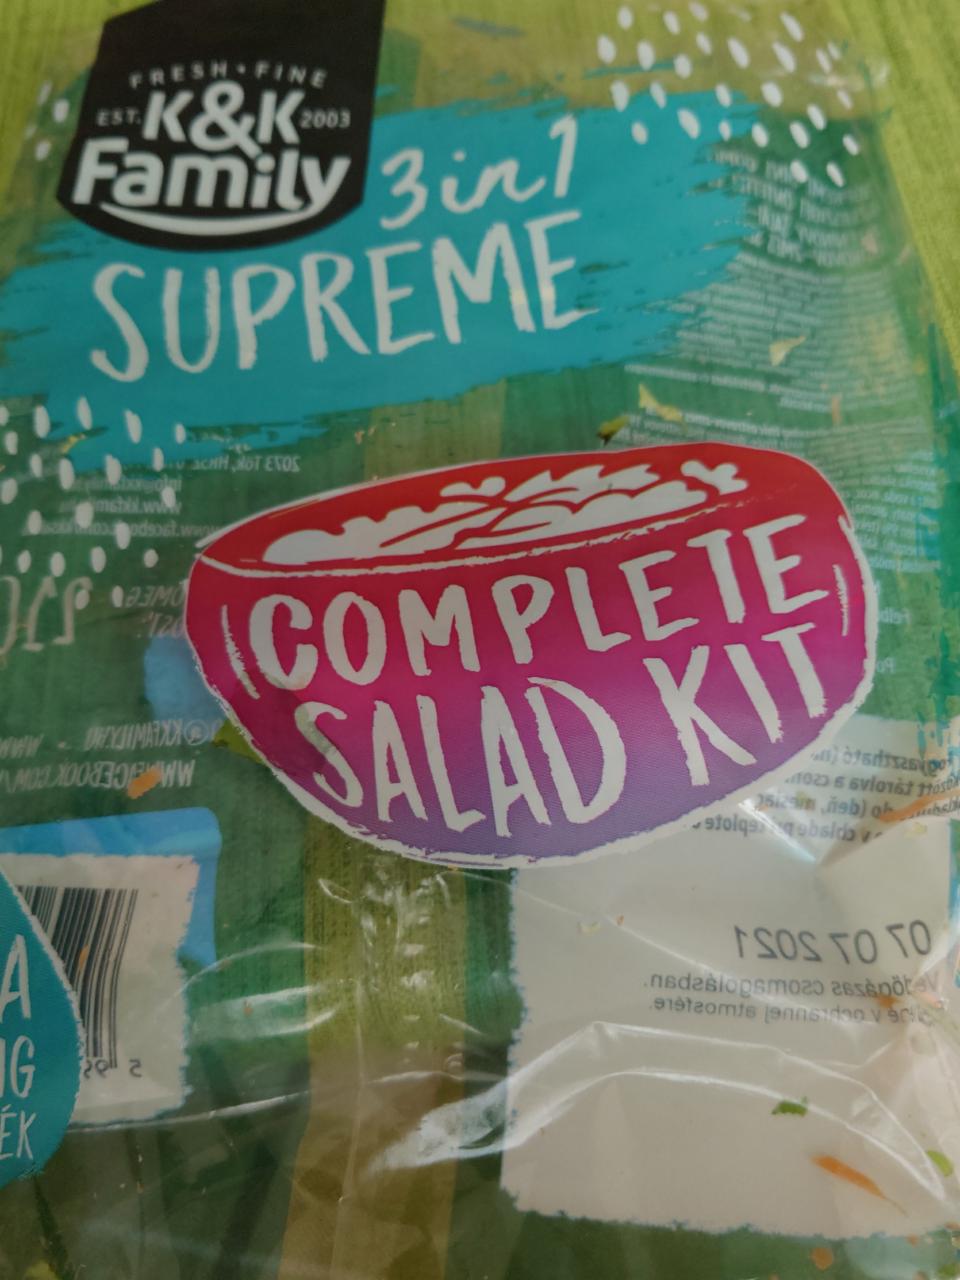 Fotografie - Complete salad kit K&K Family 3 in 1 Supreme